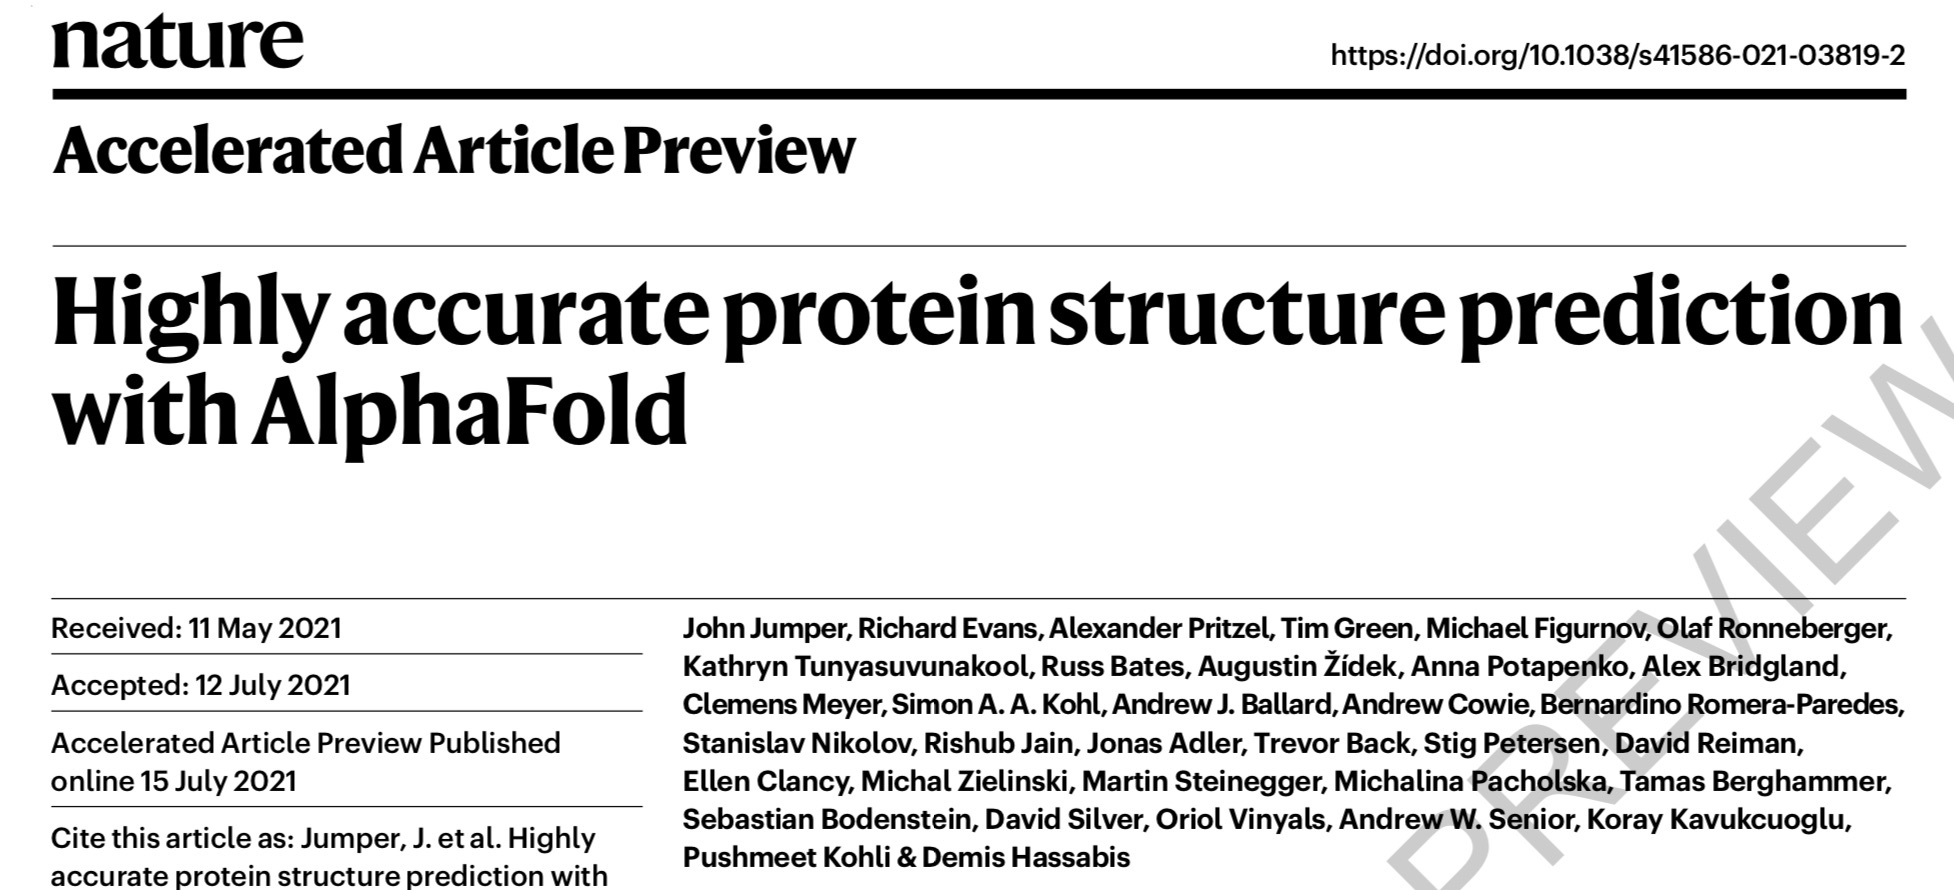 蛋白质结构预测哪家强？两大国际团队同日在顶刊开源代码